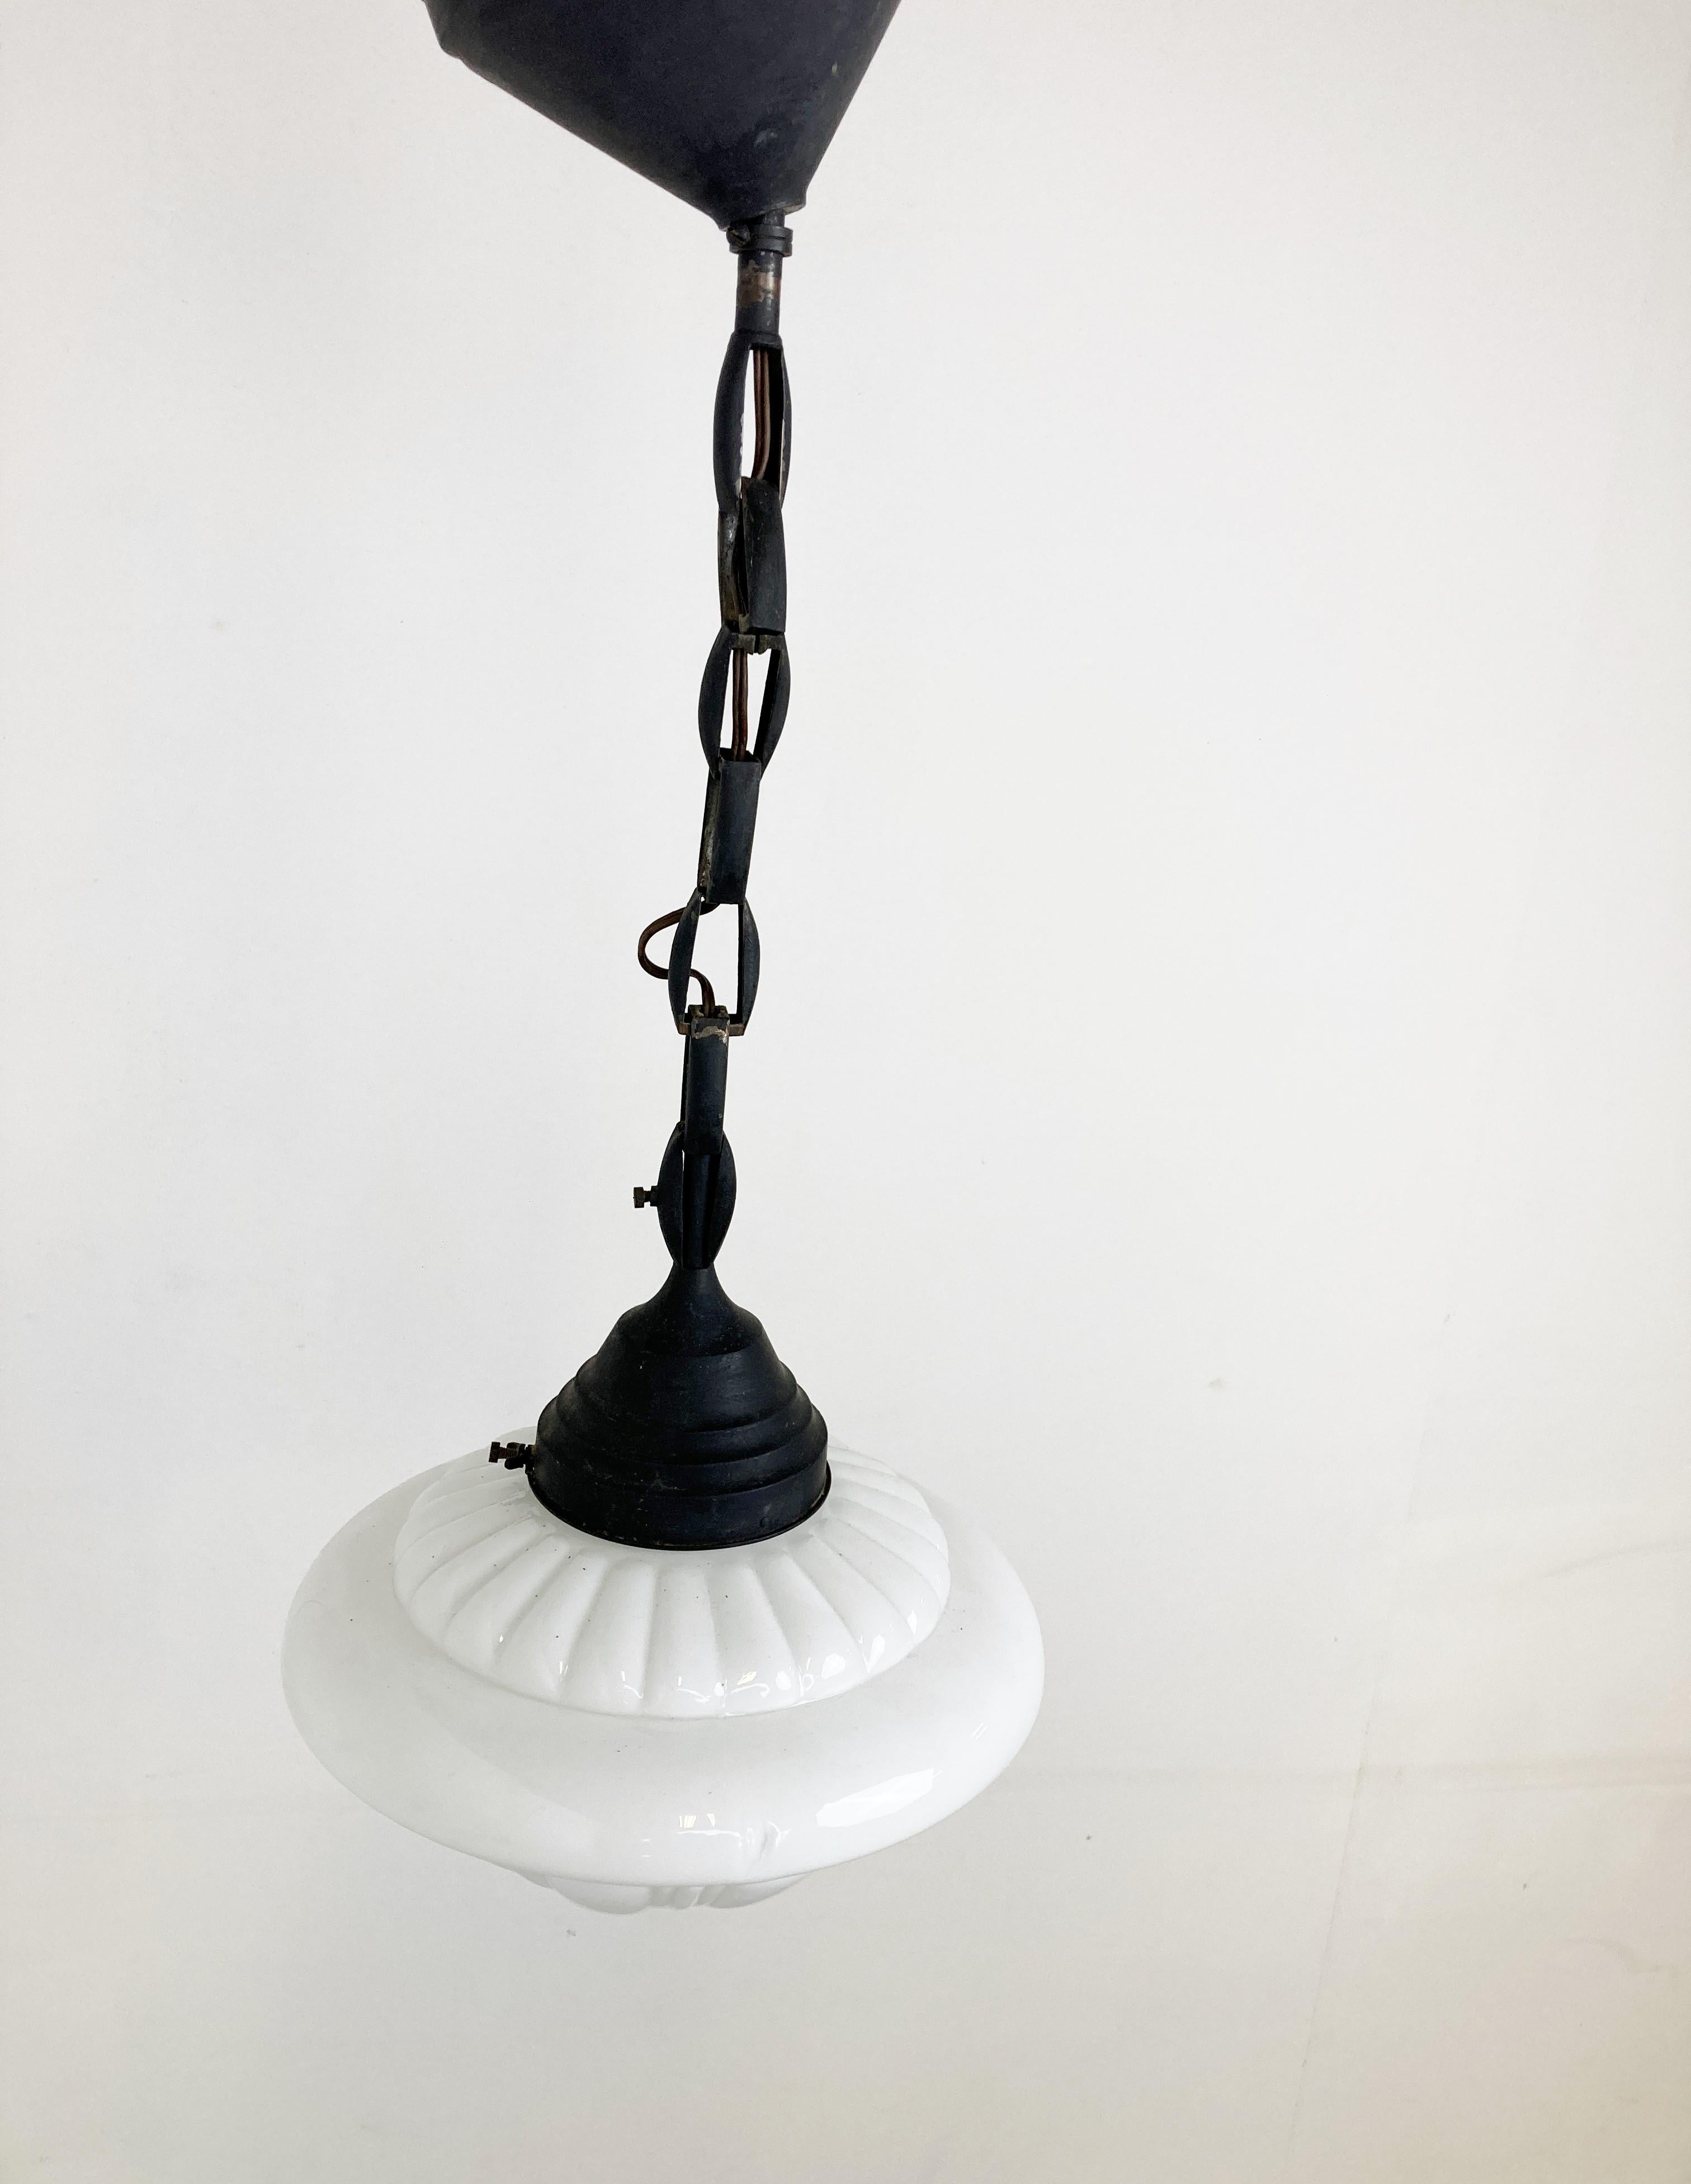 Suspension art déco antique pour couloir.

Cette lampe est très typique de l'époque art déco et était largement utilisée pour être accrochée dans les couloirs, les bureaux ou les lieux publics plus importants.

La lampe est dotée d'une chaîne en